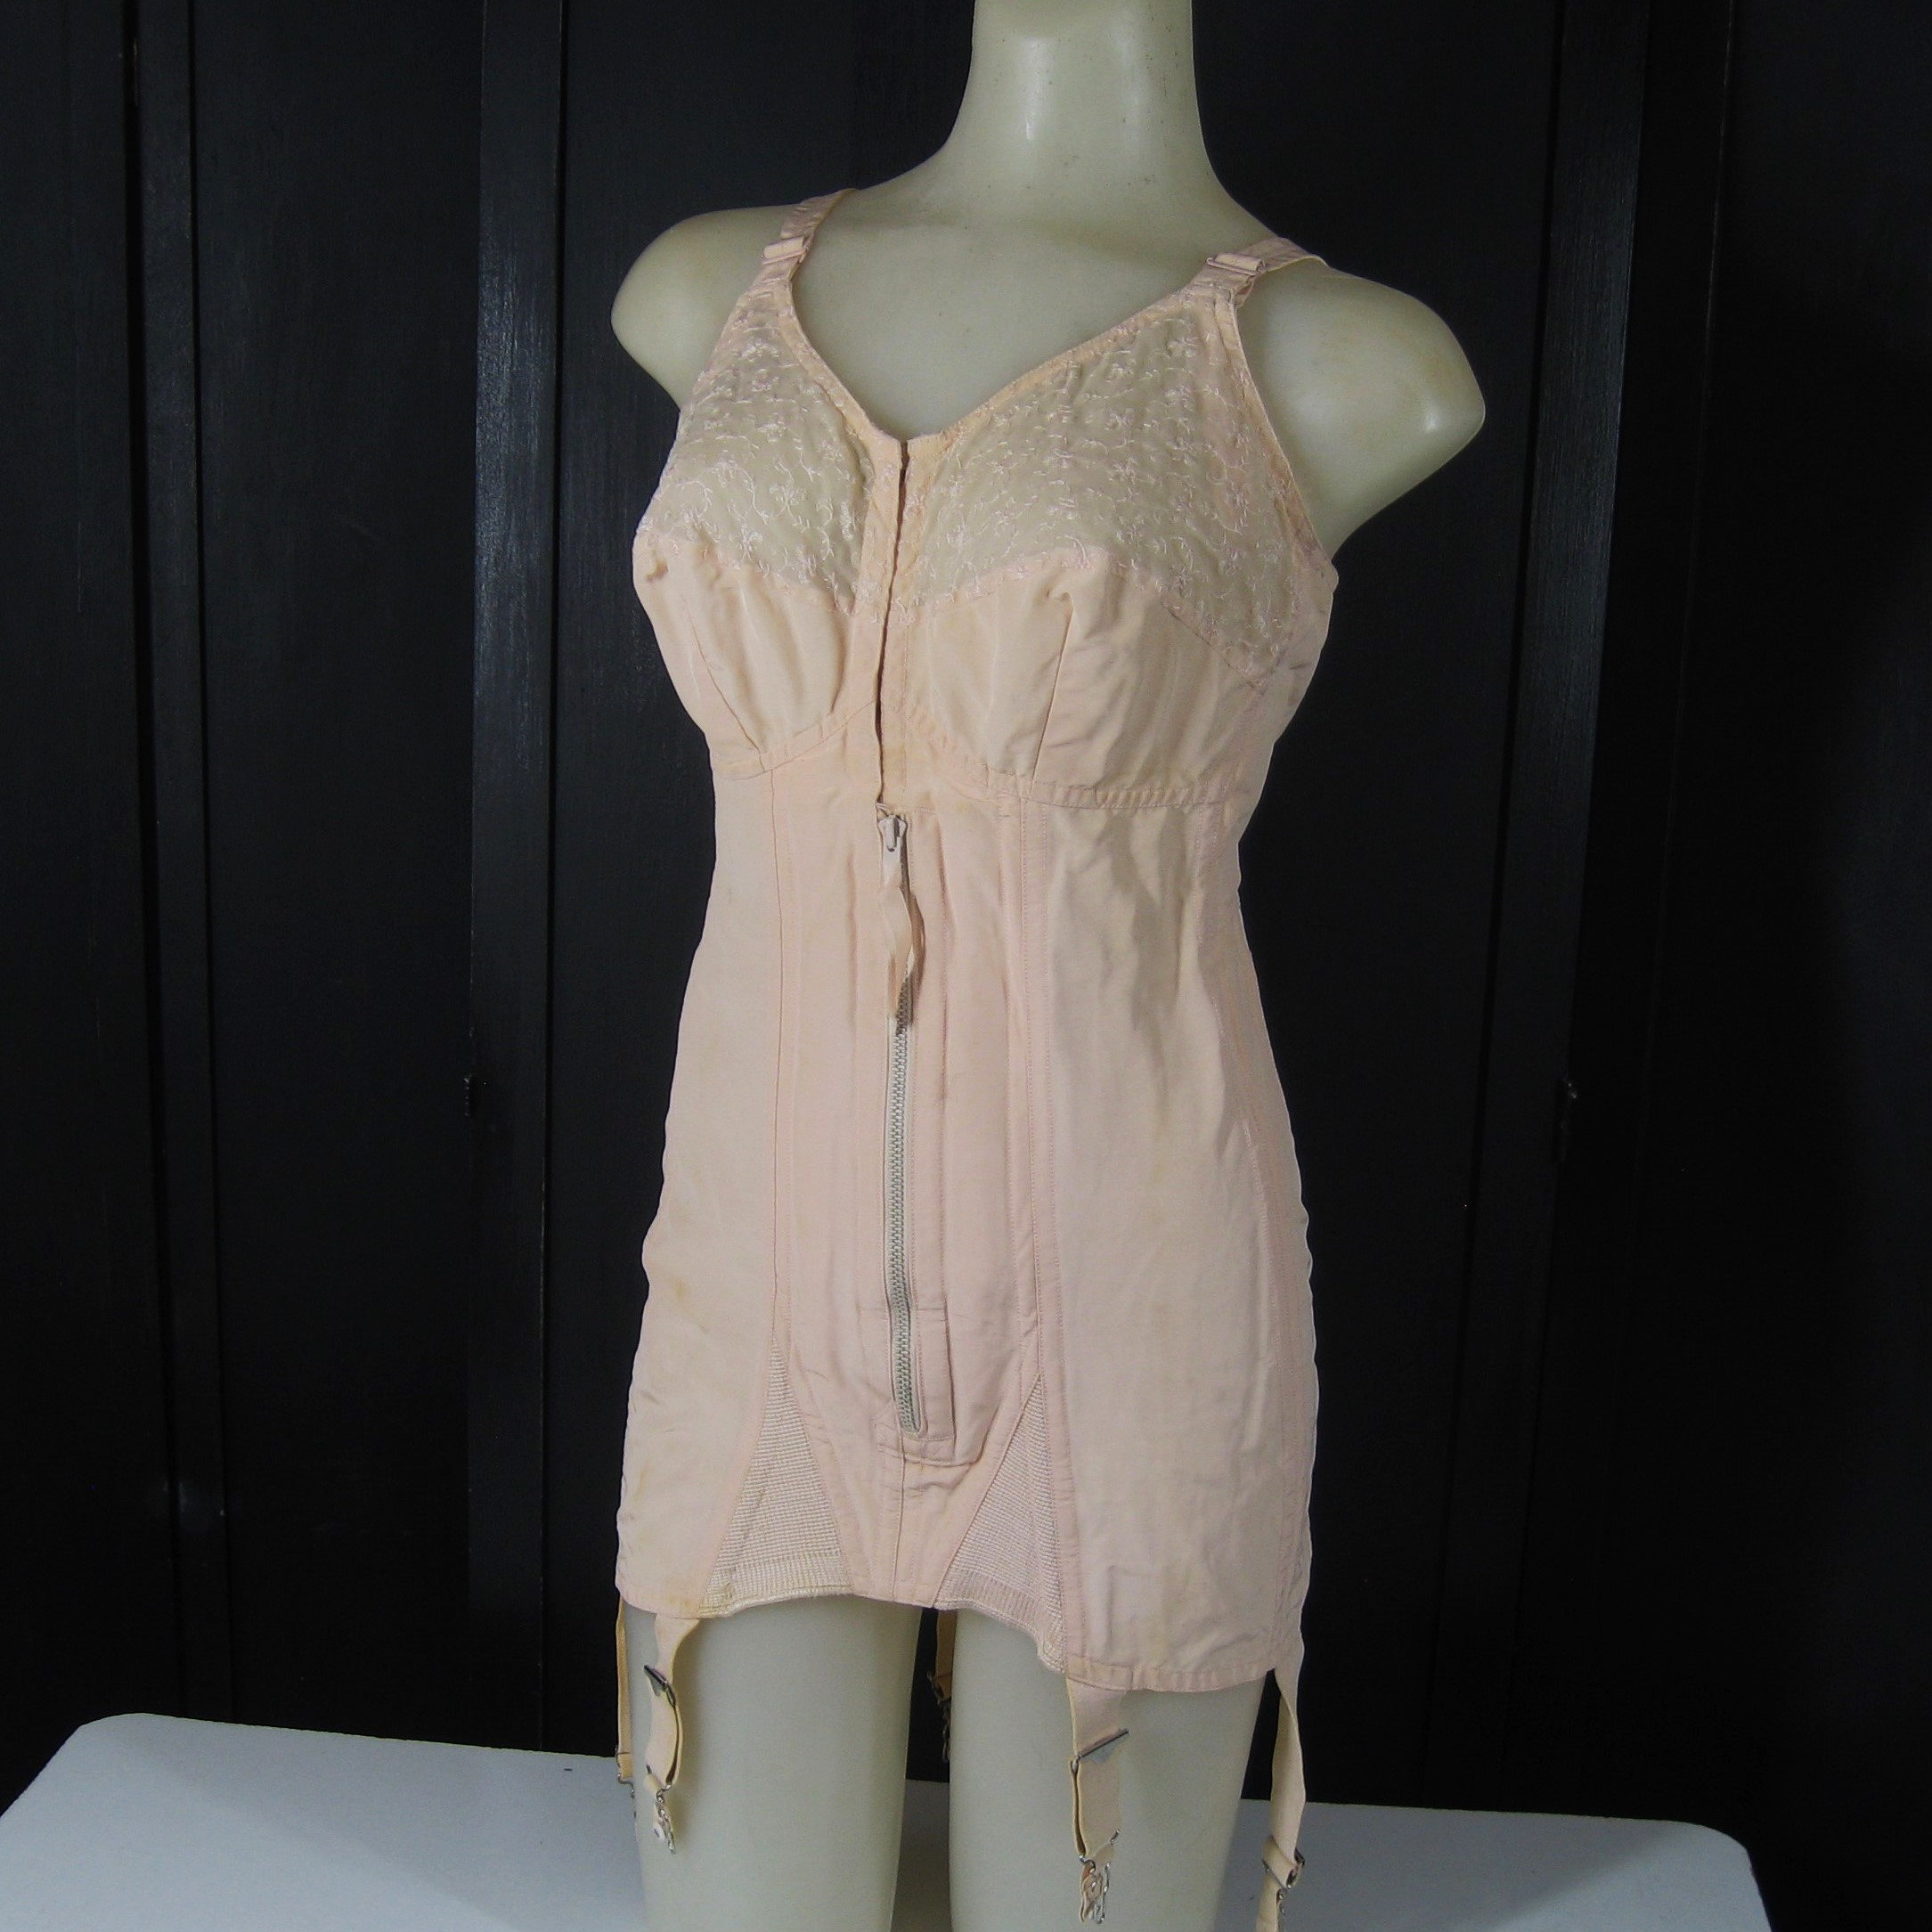 Buy Briefs Nylon Panties NLH02D13 Pink Handmade Vintage Style